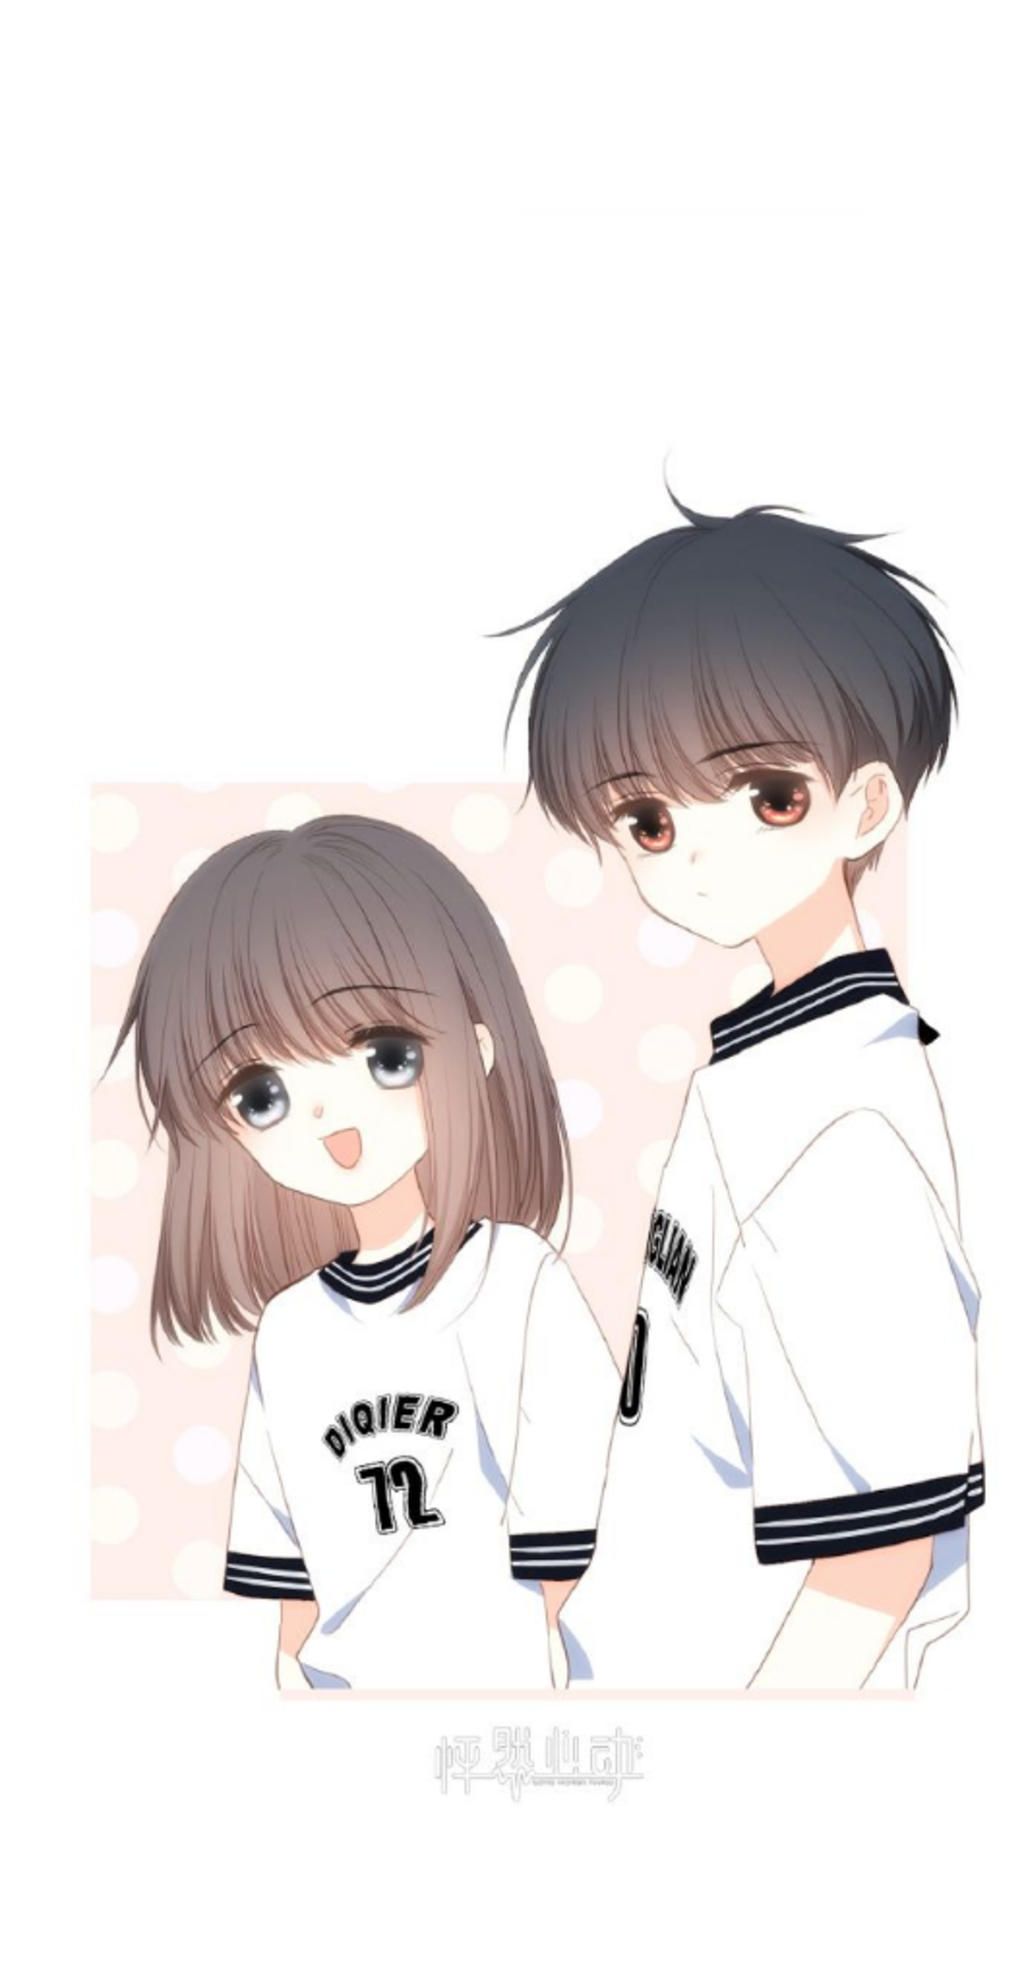 Bạn đang tìm kiếm hình ảnh anime về cặp đôi đáng yêu? Hãy xem qua bức tranh vẽ anime cặp đôi được thiết kế tinh xảo và chân thực đến từng chi tiết. Chắc chắn bạn sẽ xao xuyến trước tình yêu ngọt ngào của hai nhân vật này.